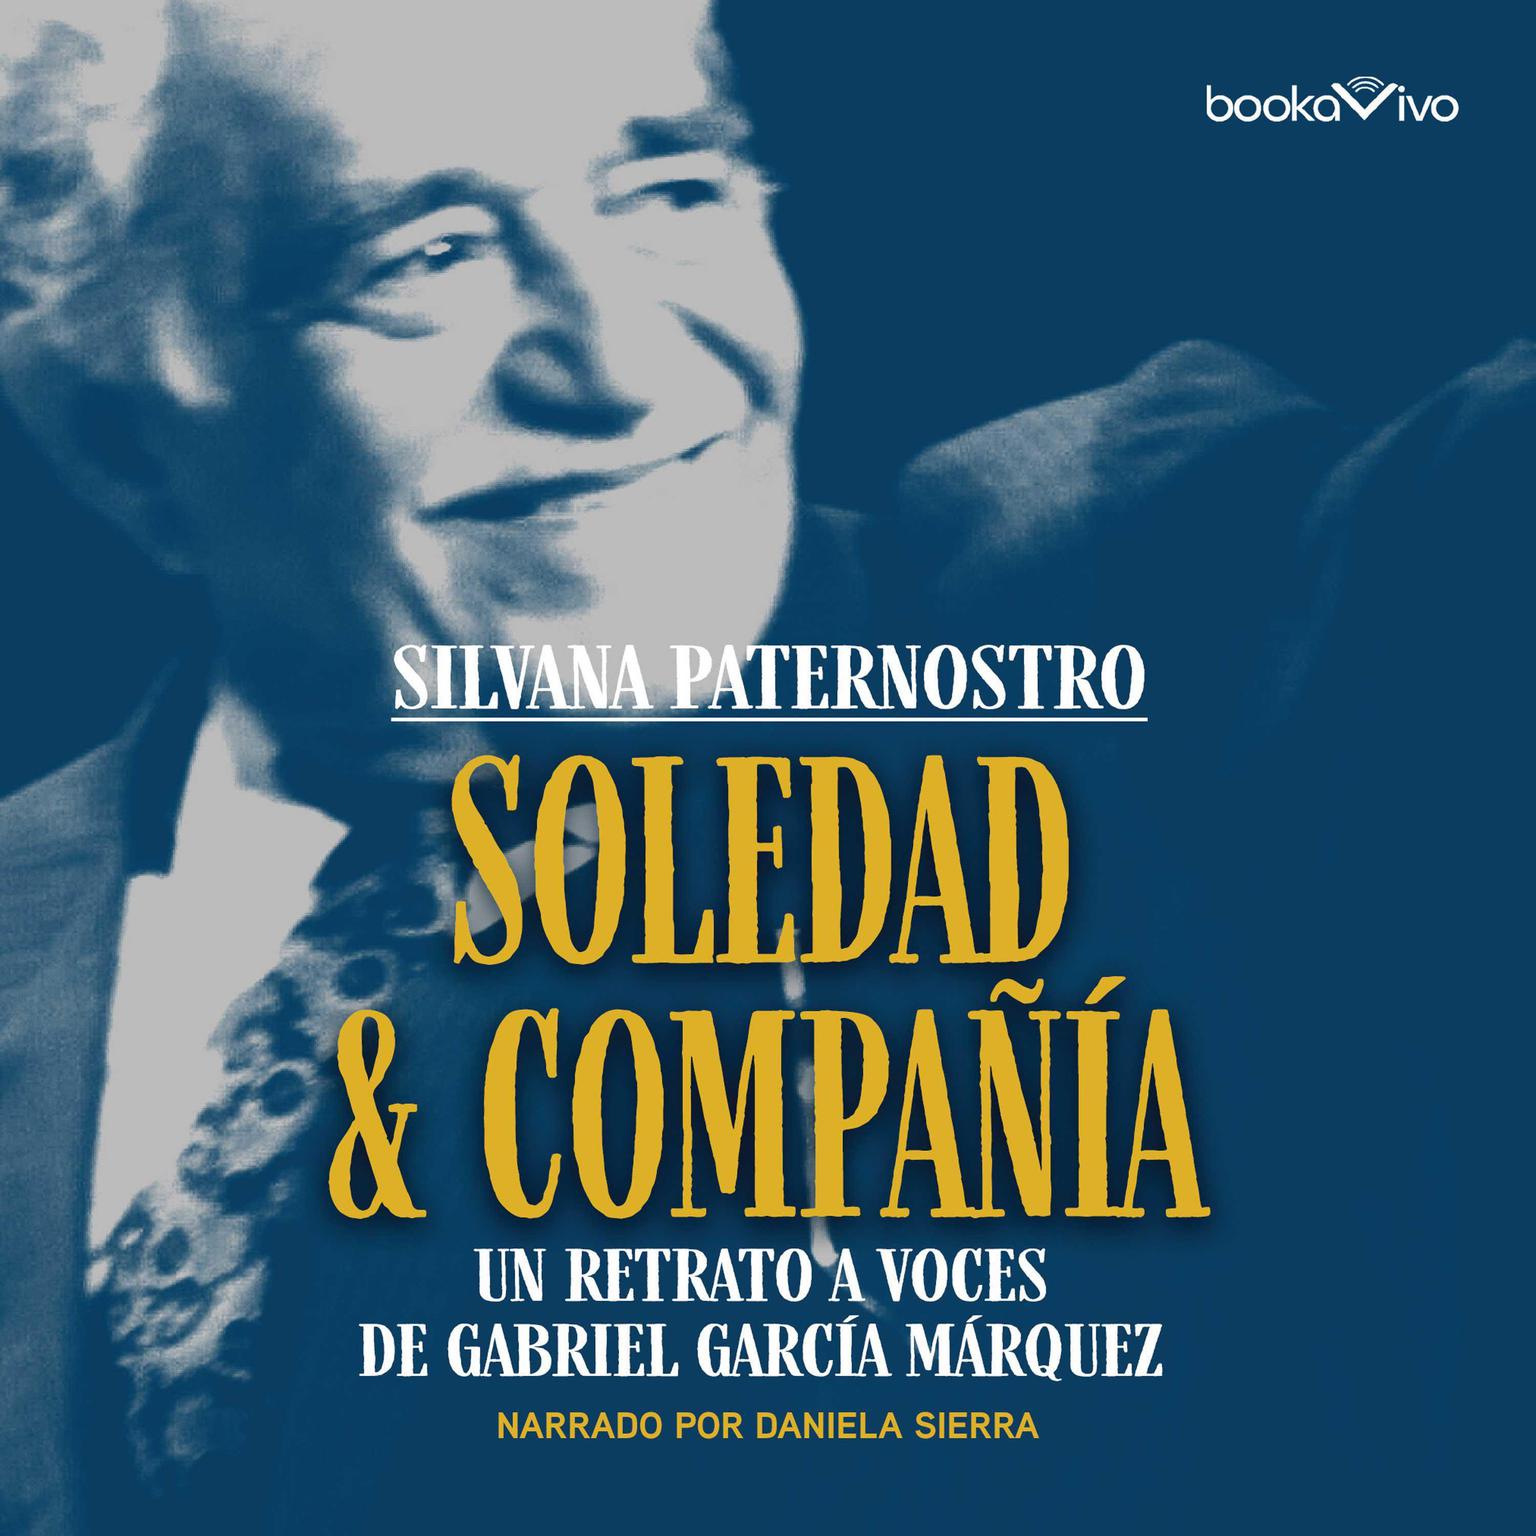 Soledad & Compañía (Solitude and Company): Un retrato a voces de Gabriel García Márquez Audiobook, by Silvana Paternostro